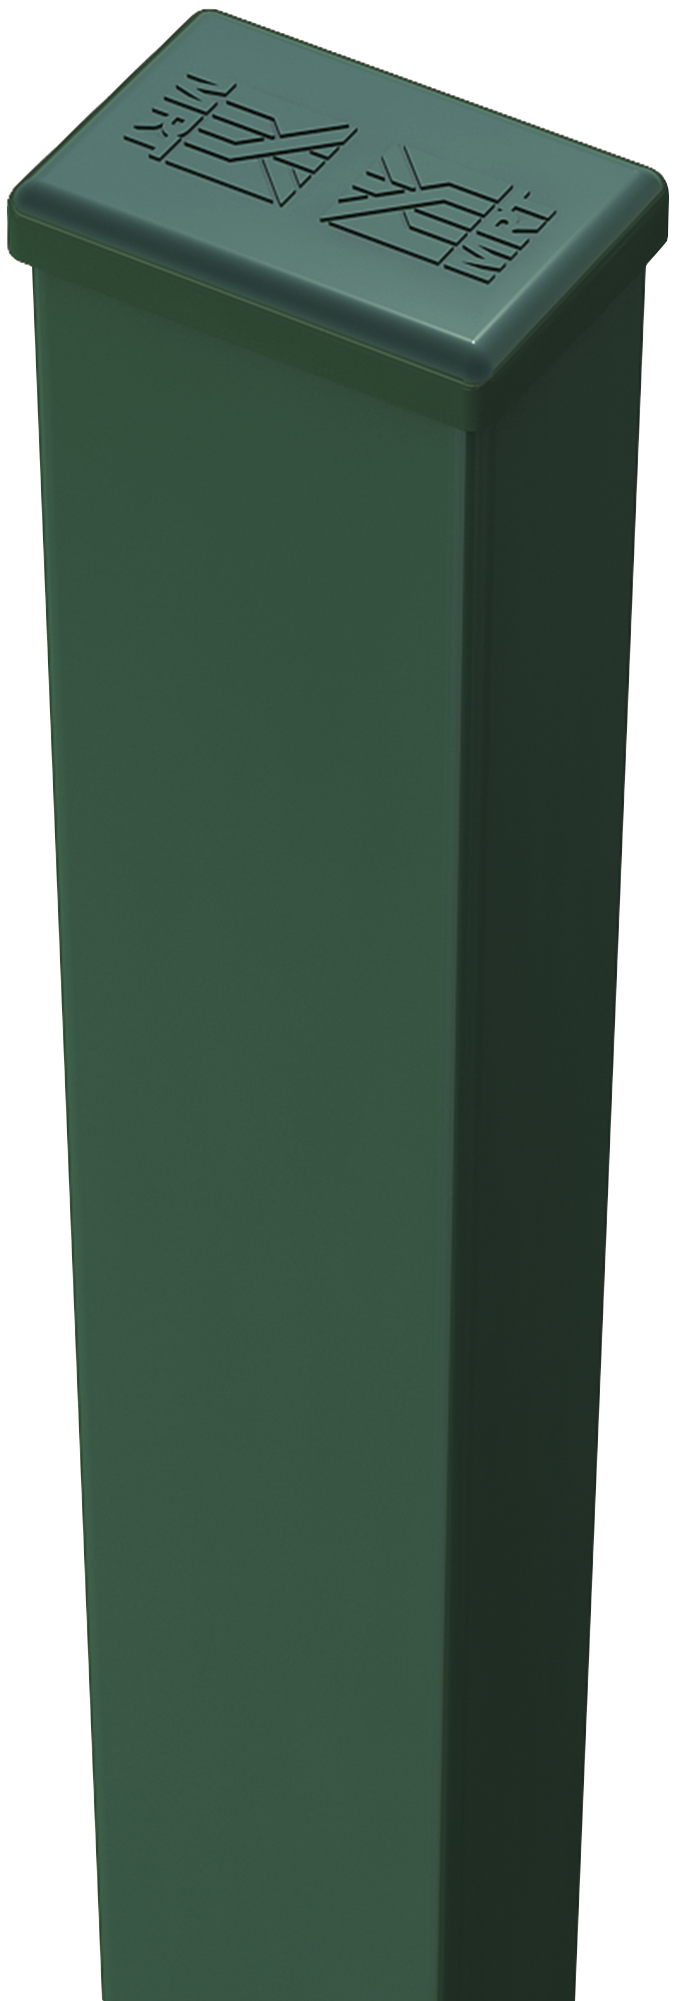 Poste de verde de 40mm y 125 cm